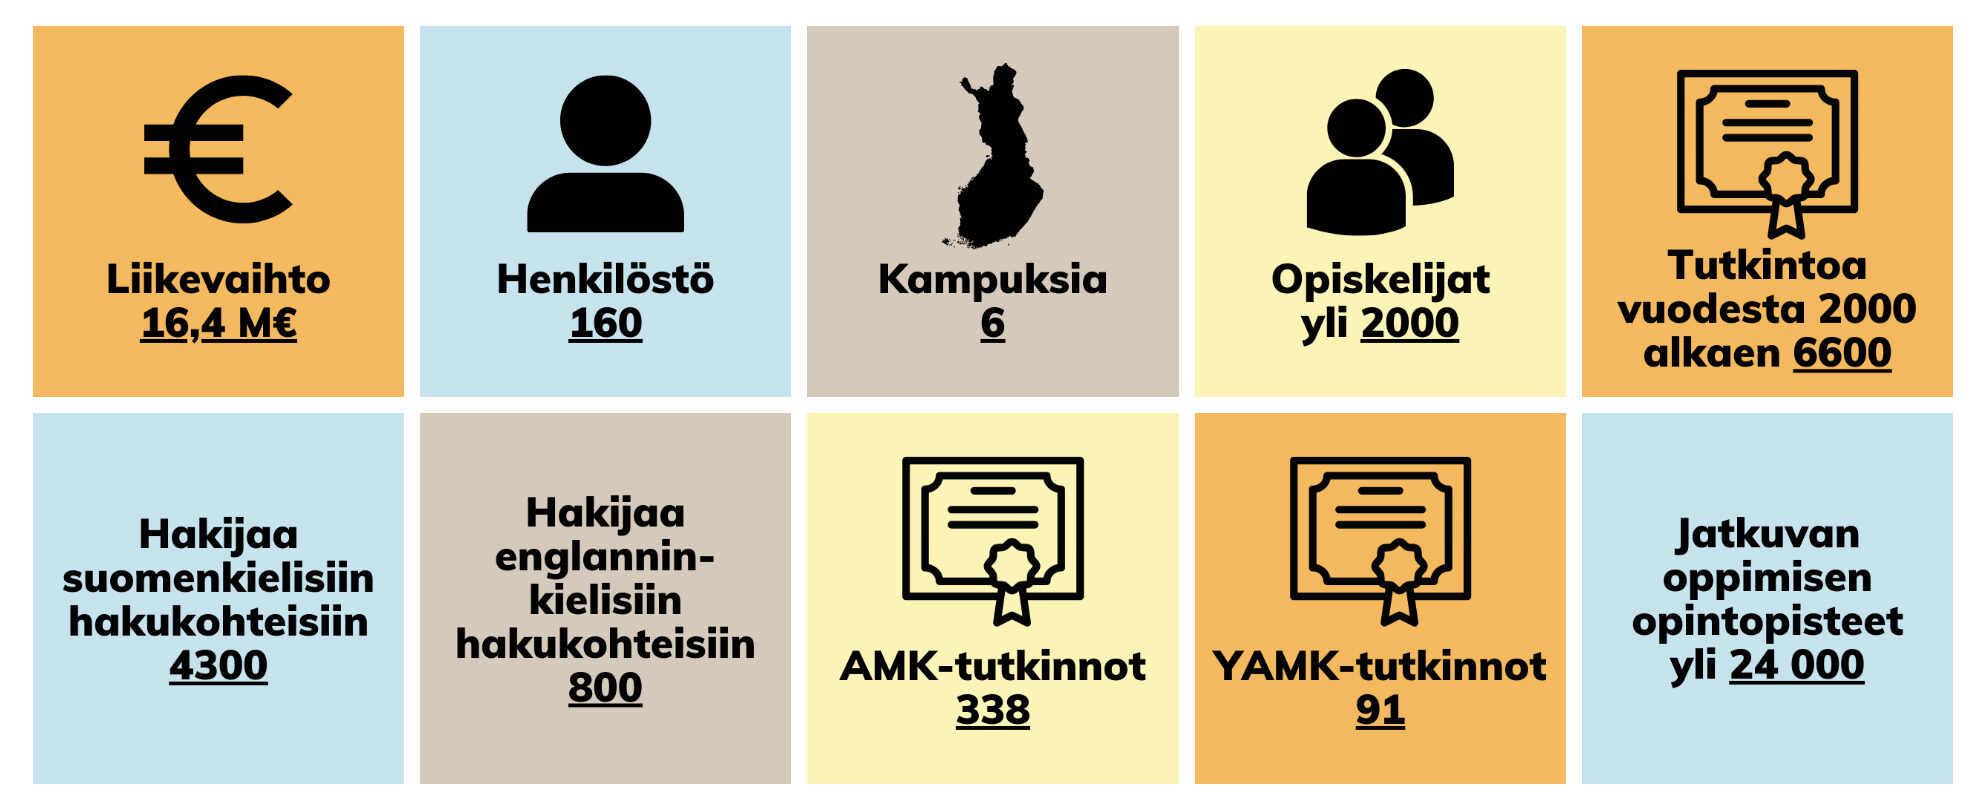 Humakin Vaikuttavuusraportin 2023 lukutietoja: Liikevaihto 16,4m, Henkilöstö 16, kampuksia 6, opiskleijat yli 200, tutkintoa vuodesta 2000 alkaen 6600.